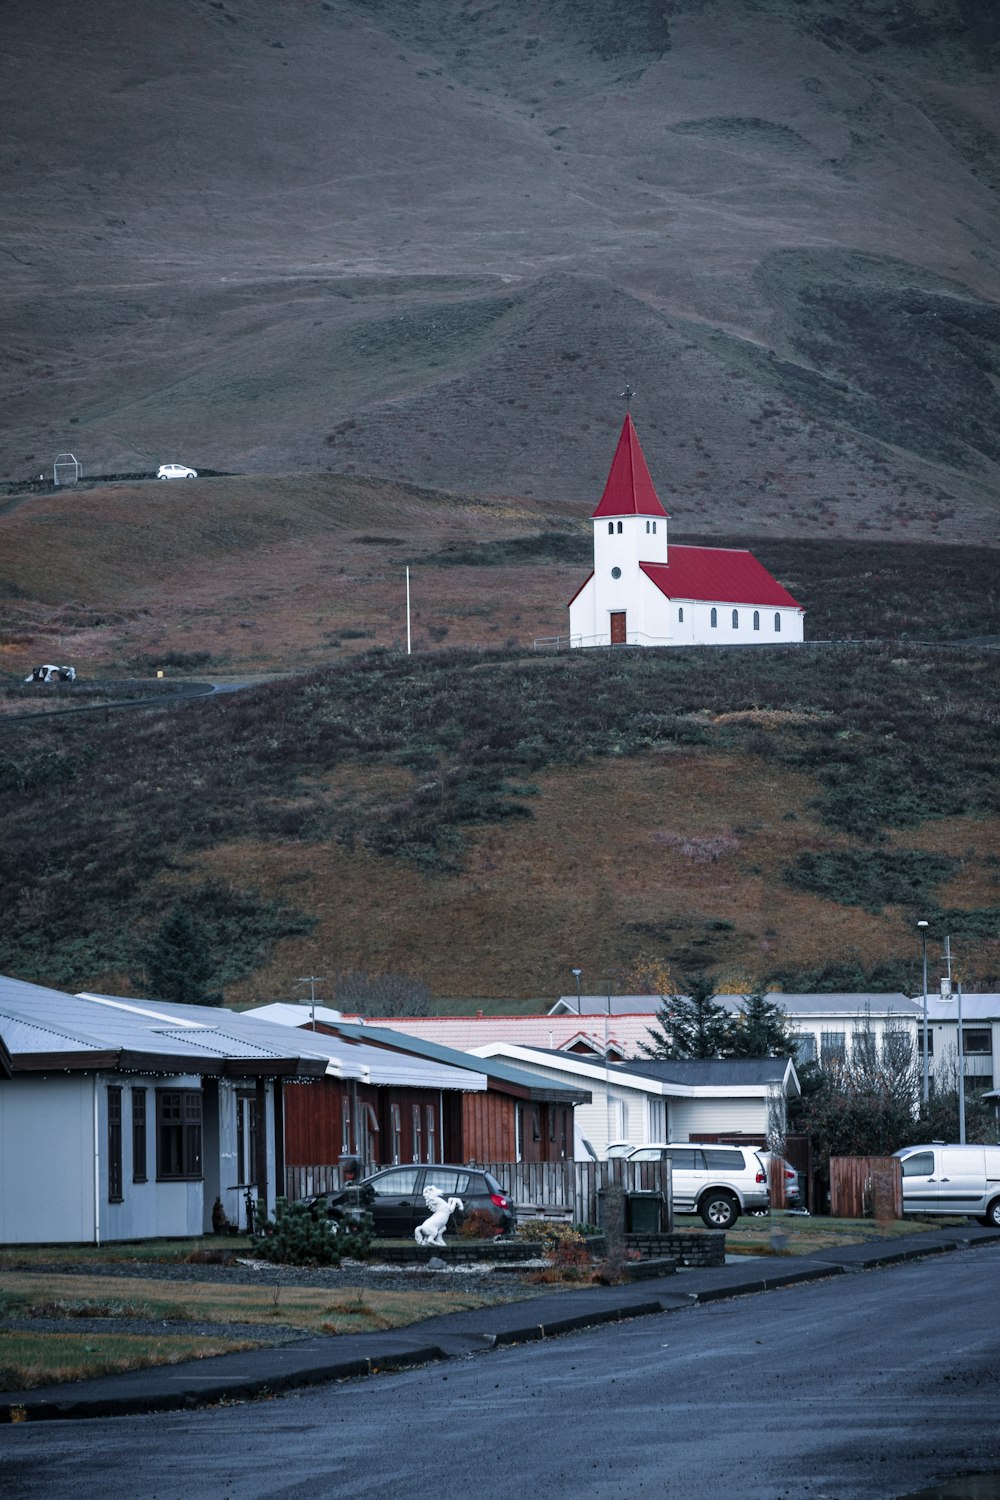 Casa de concreto branca e vermelha perto da montanha verde e marrom durante o dia